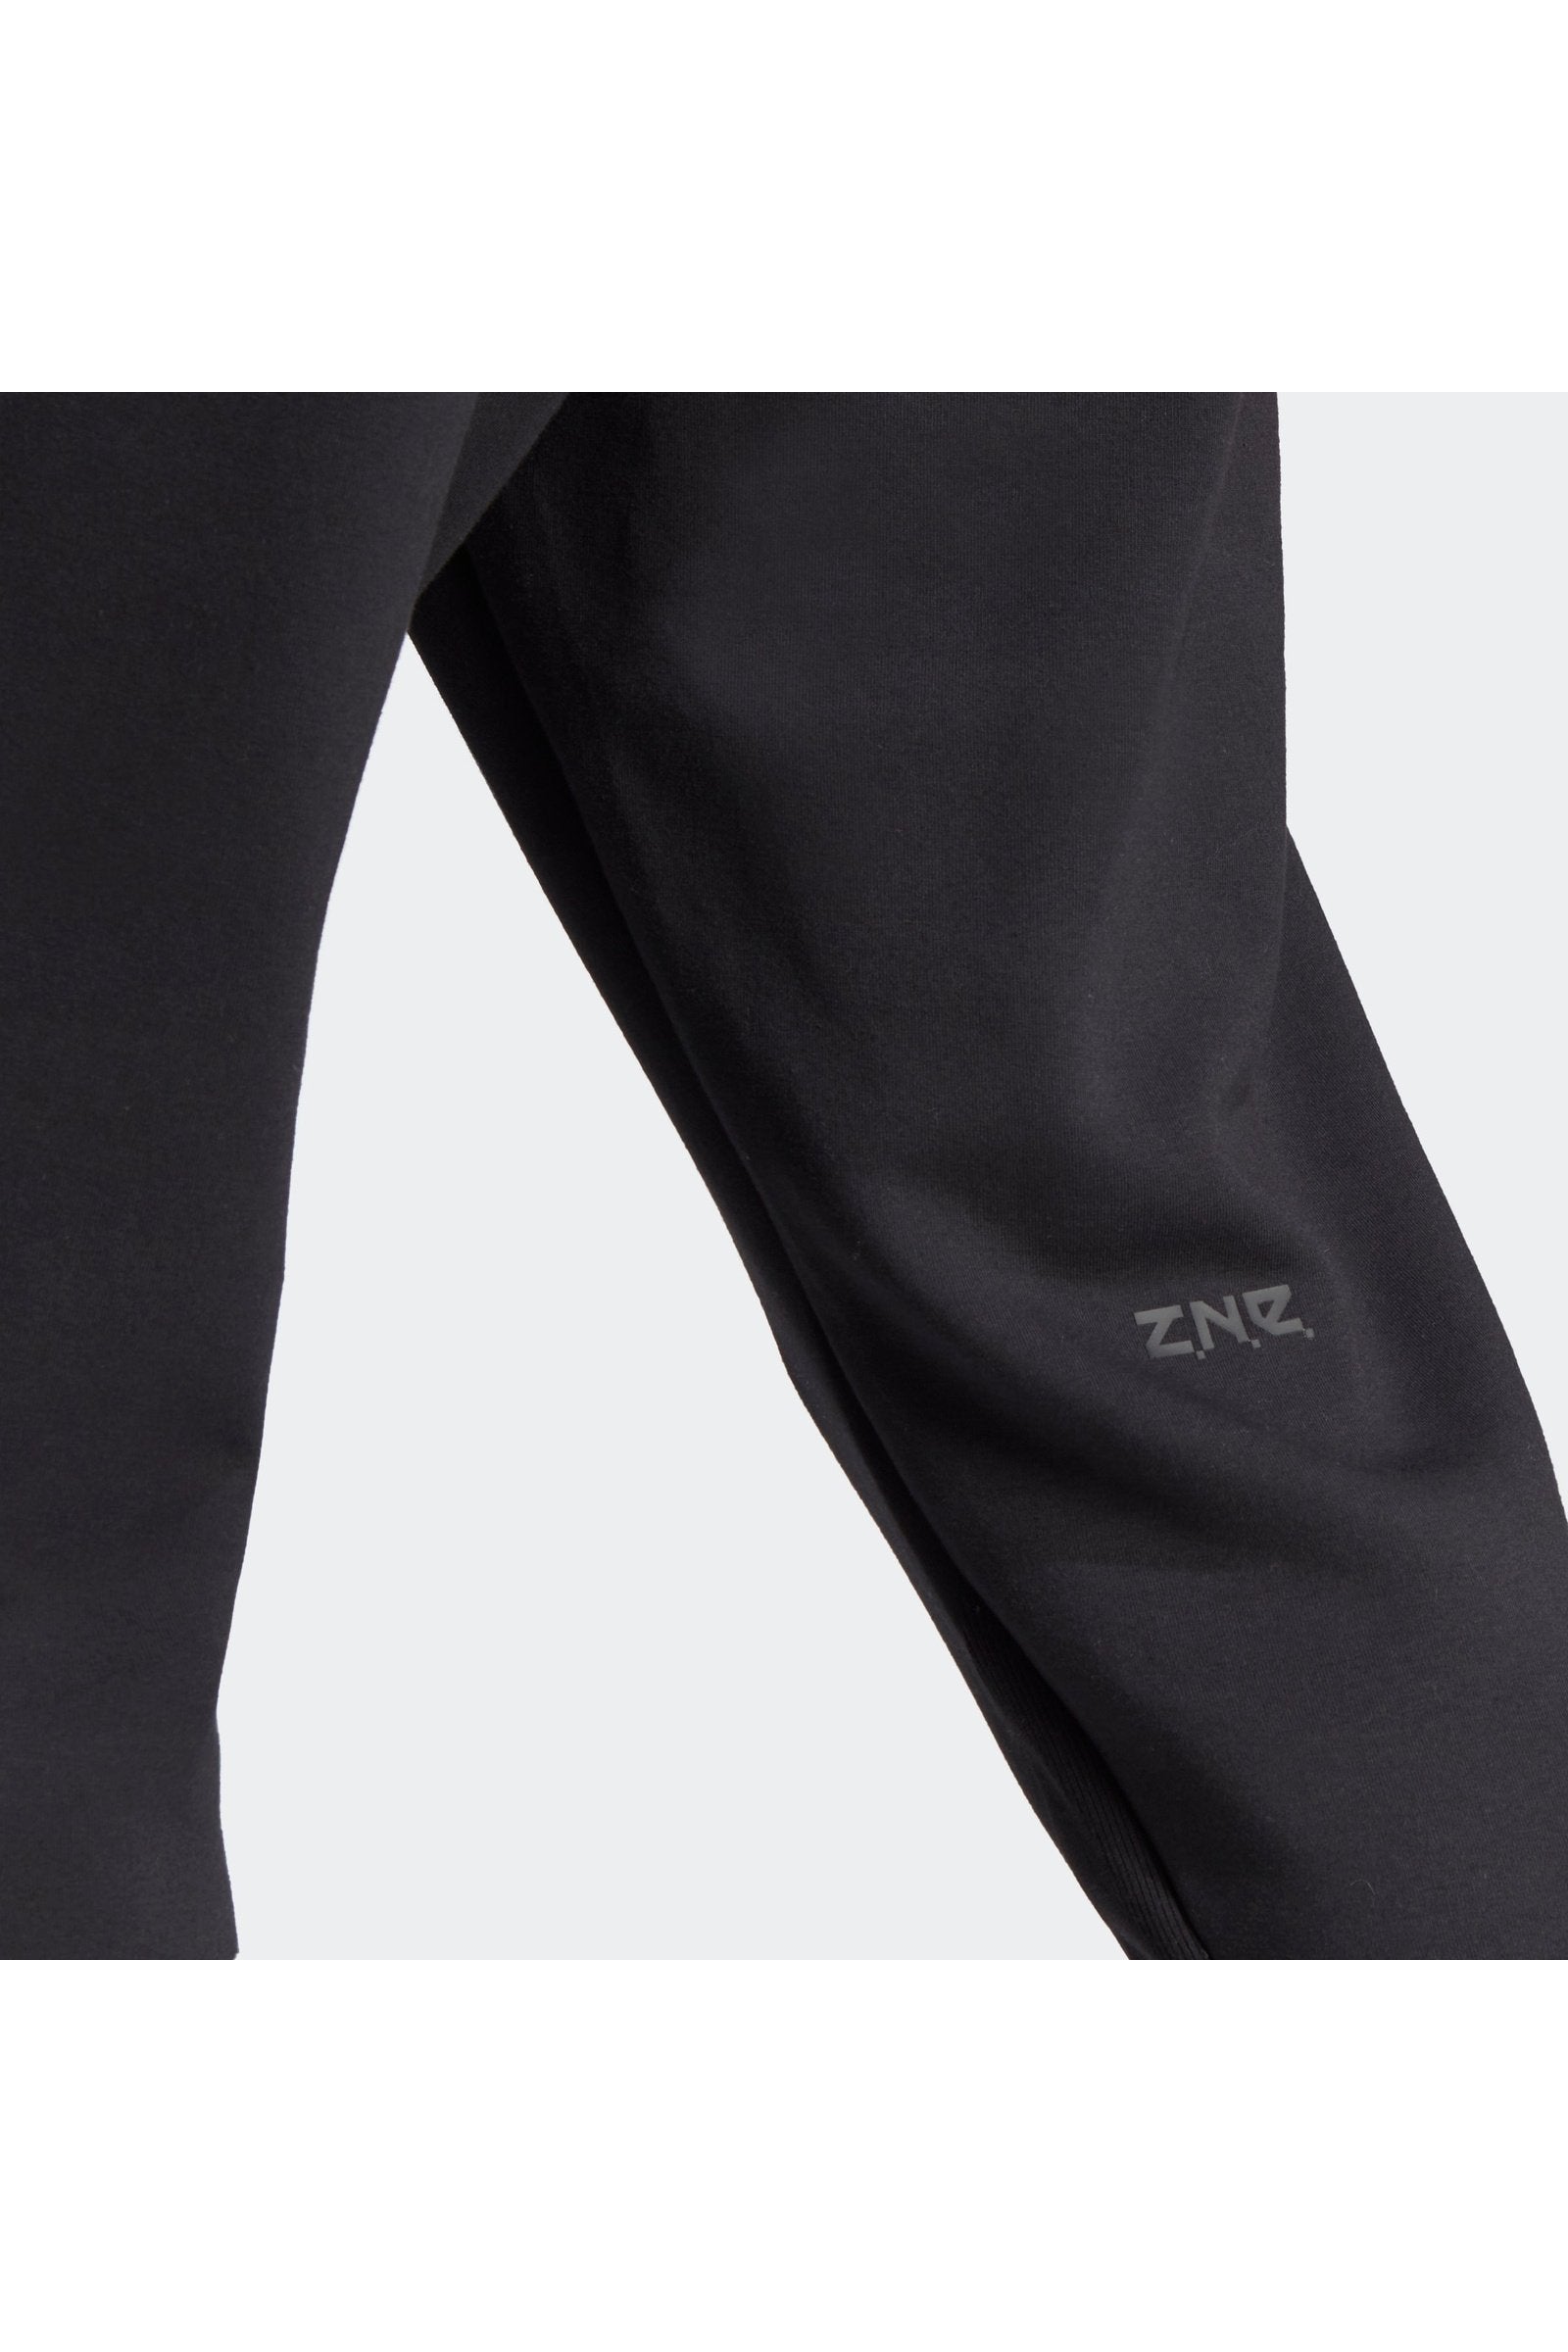 מכנסיים ארוכים לגברים Z.N.E.בצבע שחור